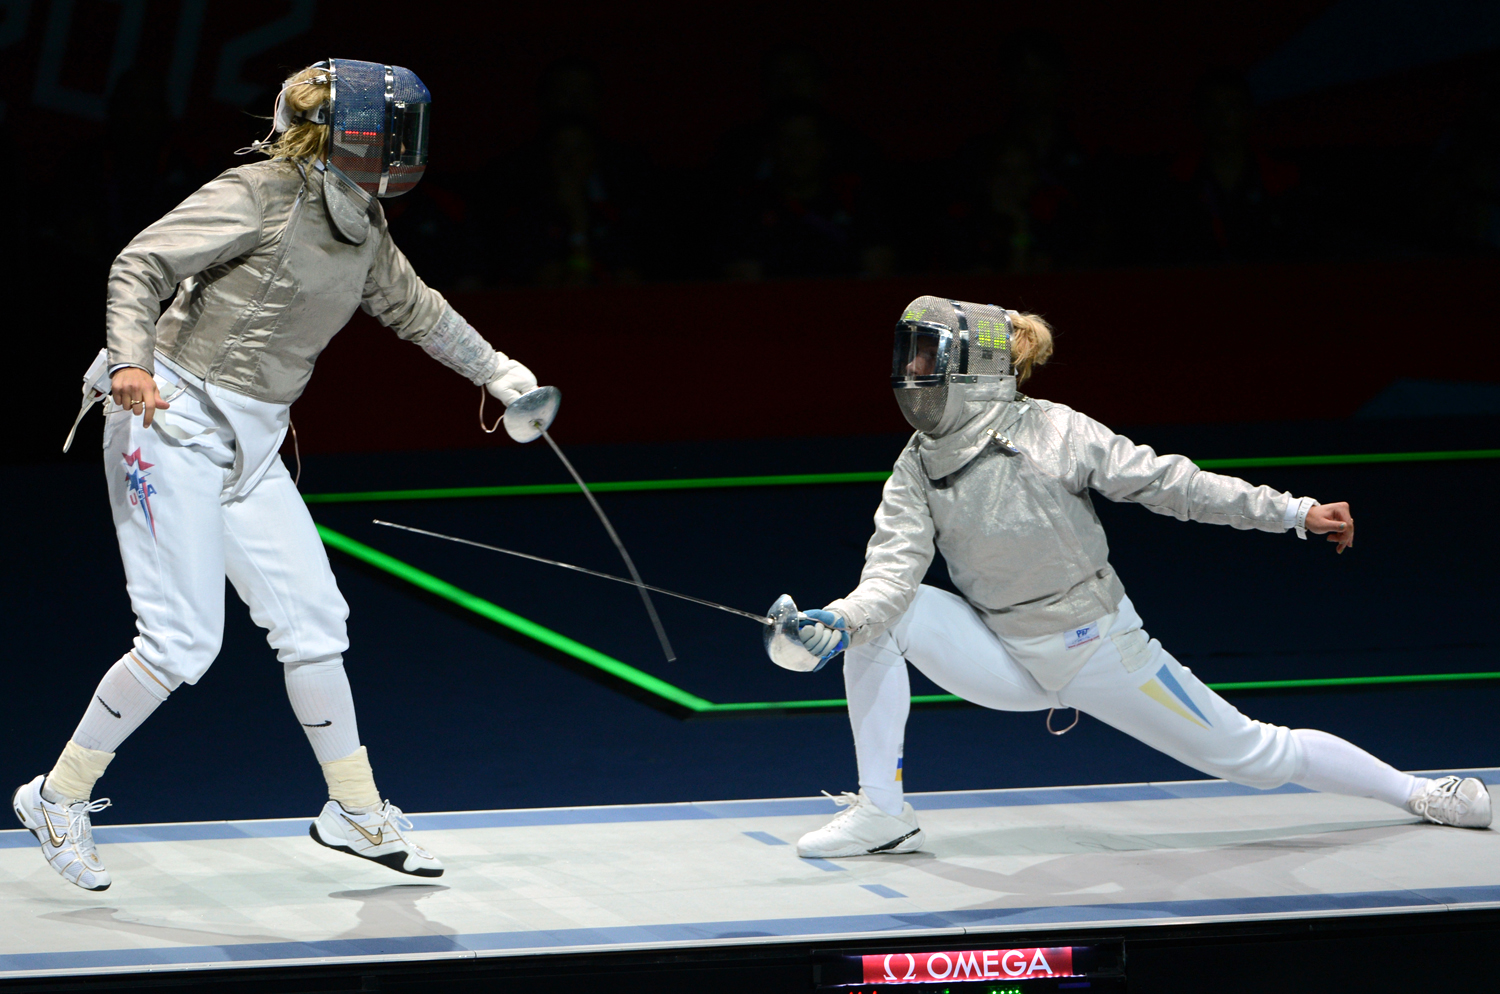 En garde! Fencing deserves more respect as a sport